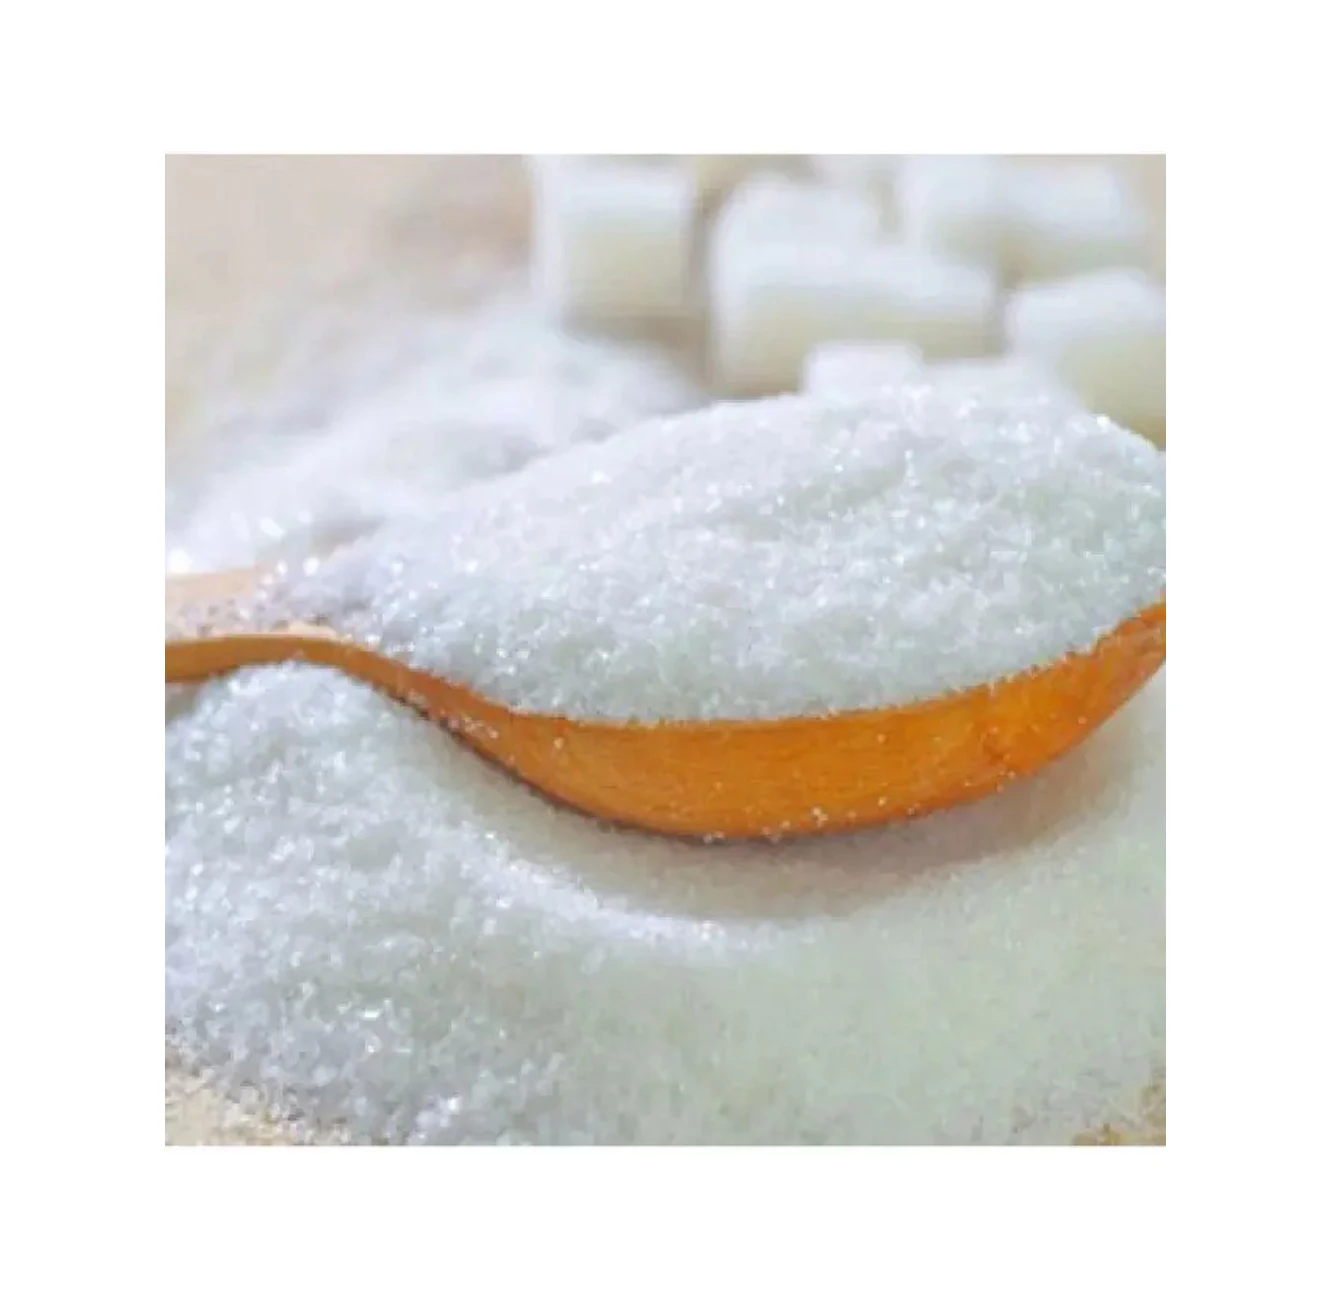 Сахар Icumsa 45 из Бразилии, готовый к экспорту 100%, бразильский, оптовая продажа, упаковка 50 кг, очищенный кристалл, белый сахар Icumsa 45 (10000009692058)